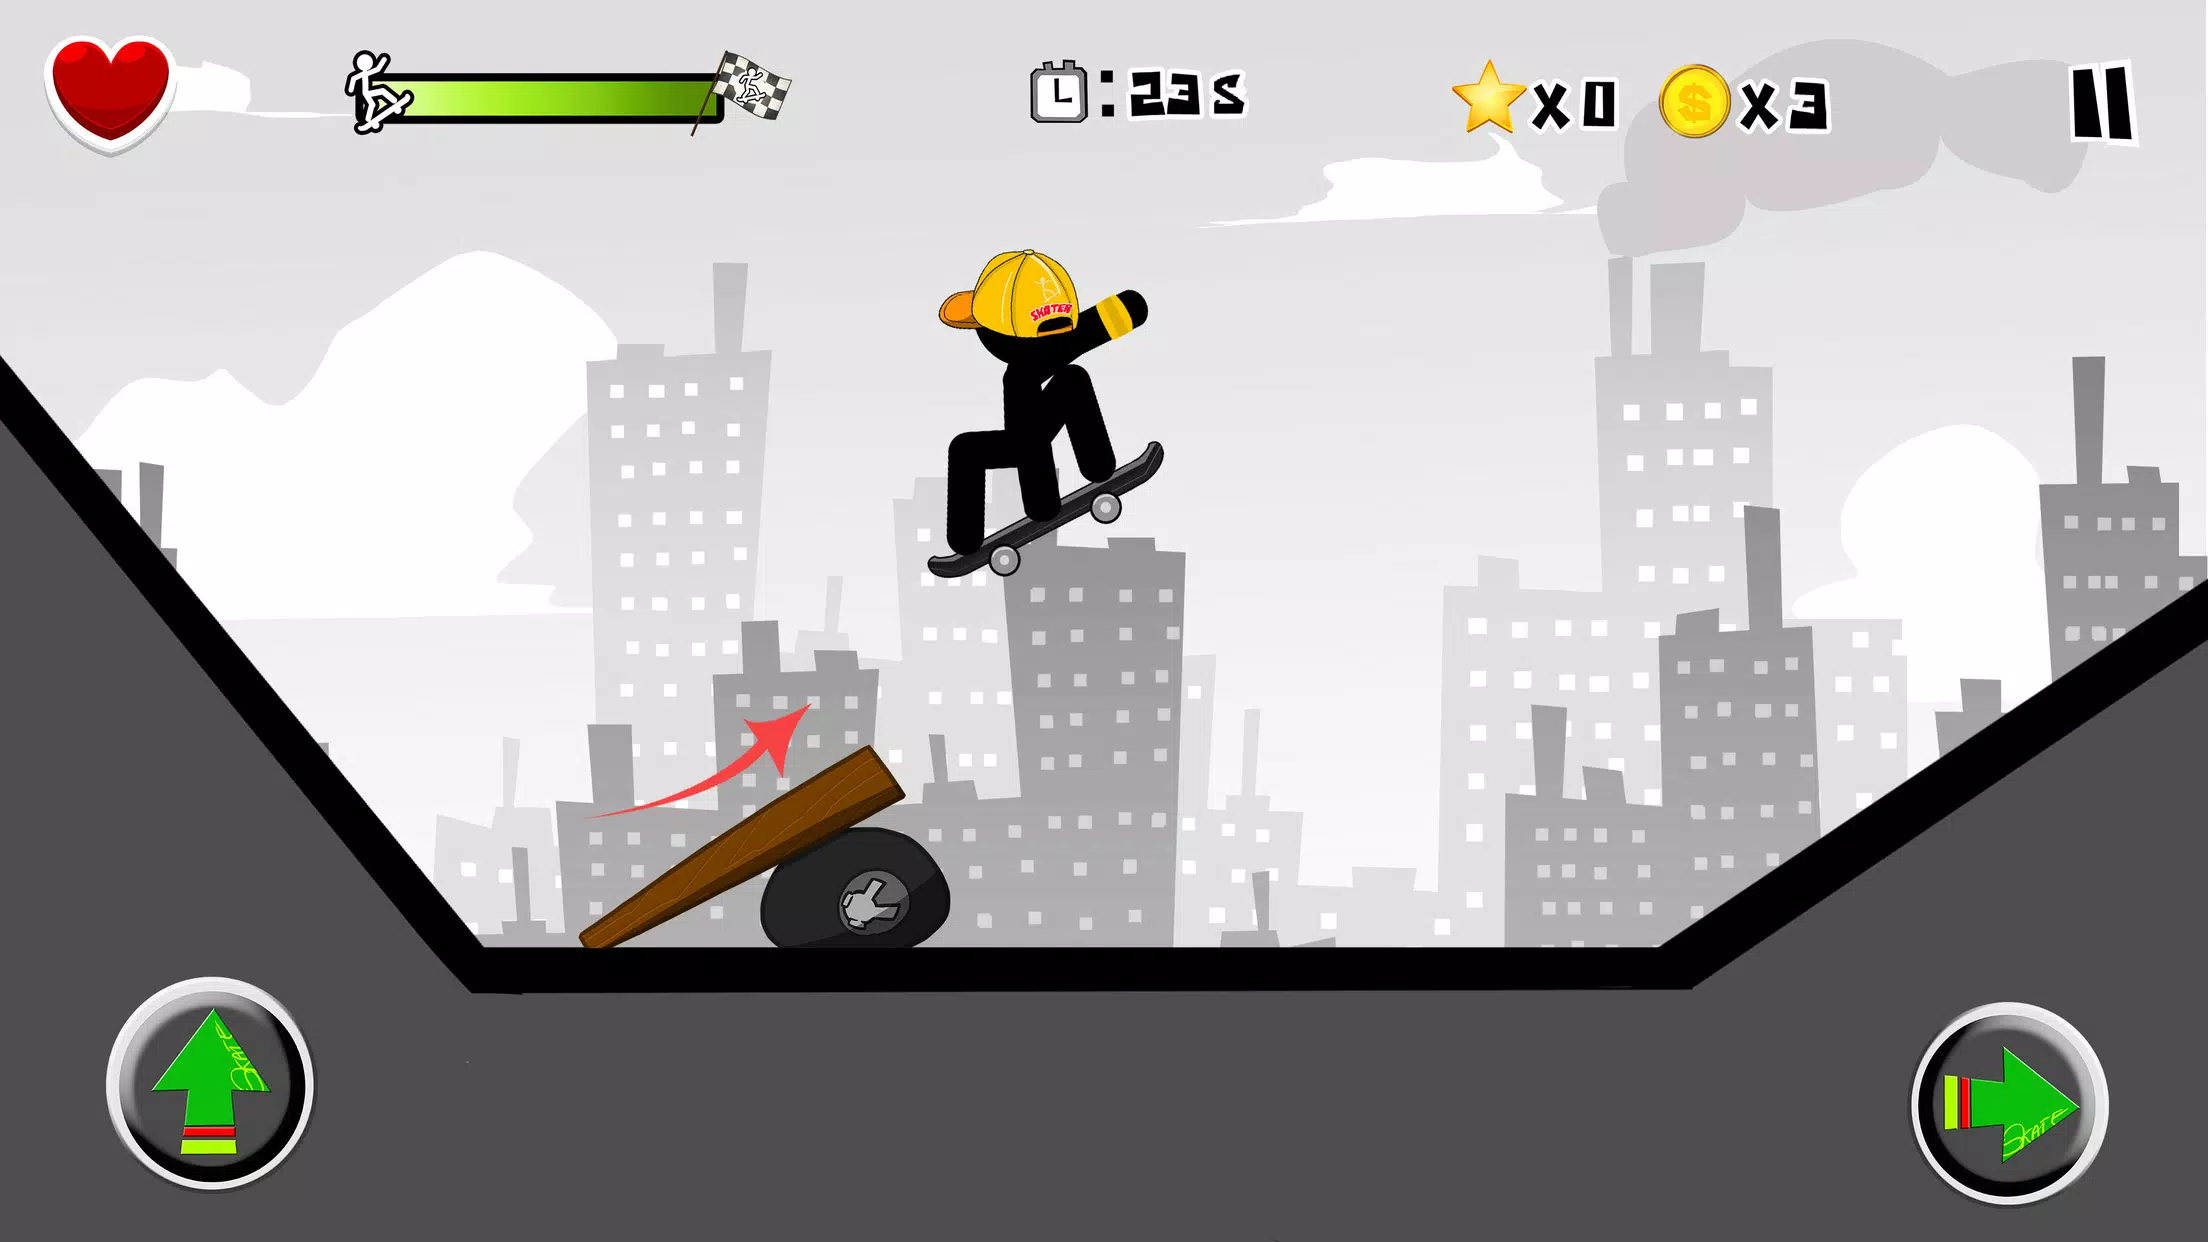 Stickman Skate: 360 Epic City 🕹️ Jogue no CrazyGames